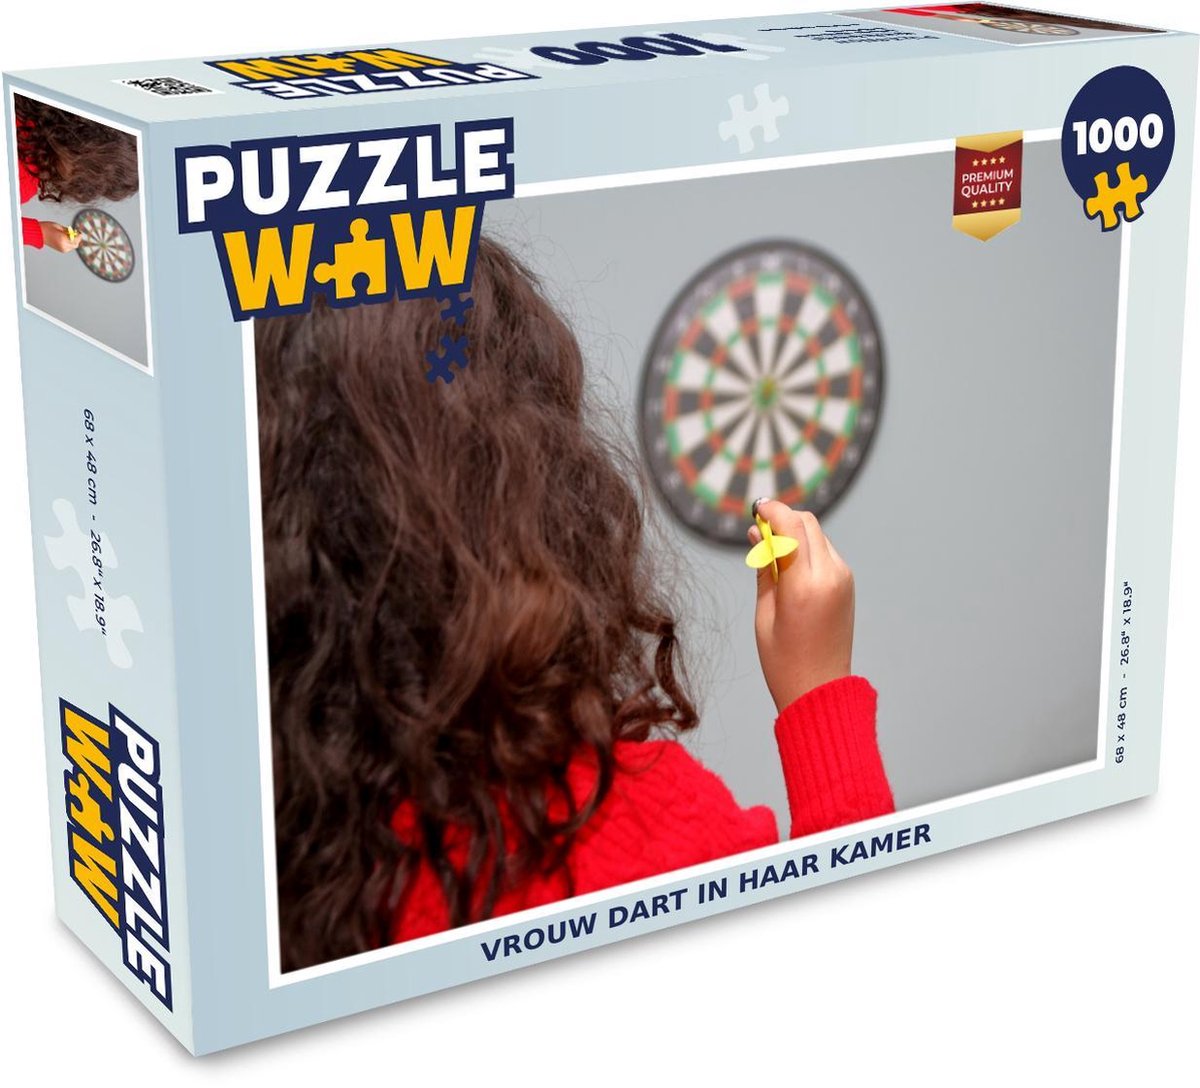 Puzzel 1000 stukjes volwassenen Darten 1000 stukjes - Vrouw dart in haar kamer - PuzzleWow heeft +100000 puzzels